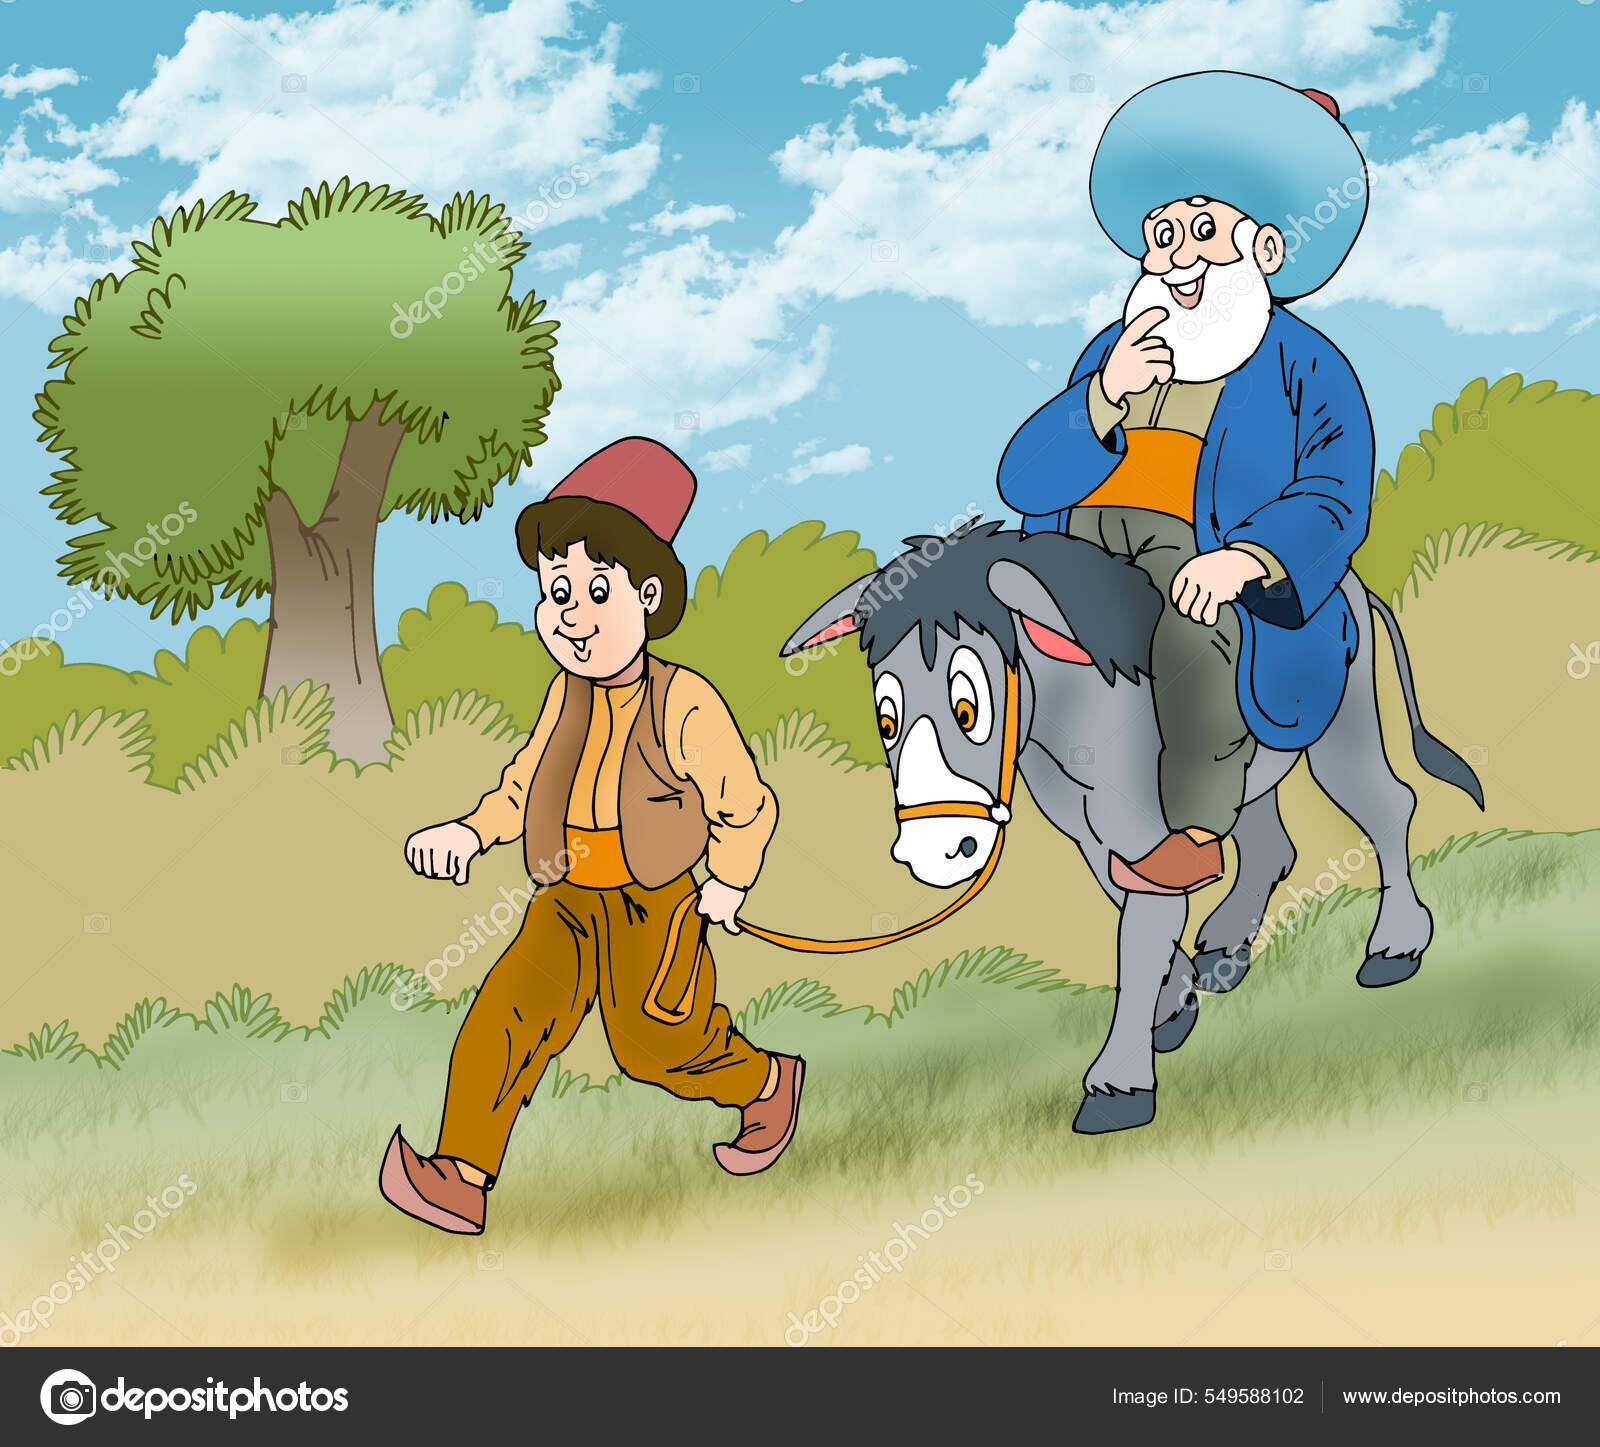 64 ilustraciones de stock de Nasreddin hoca | Depositphotos